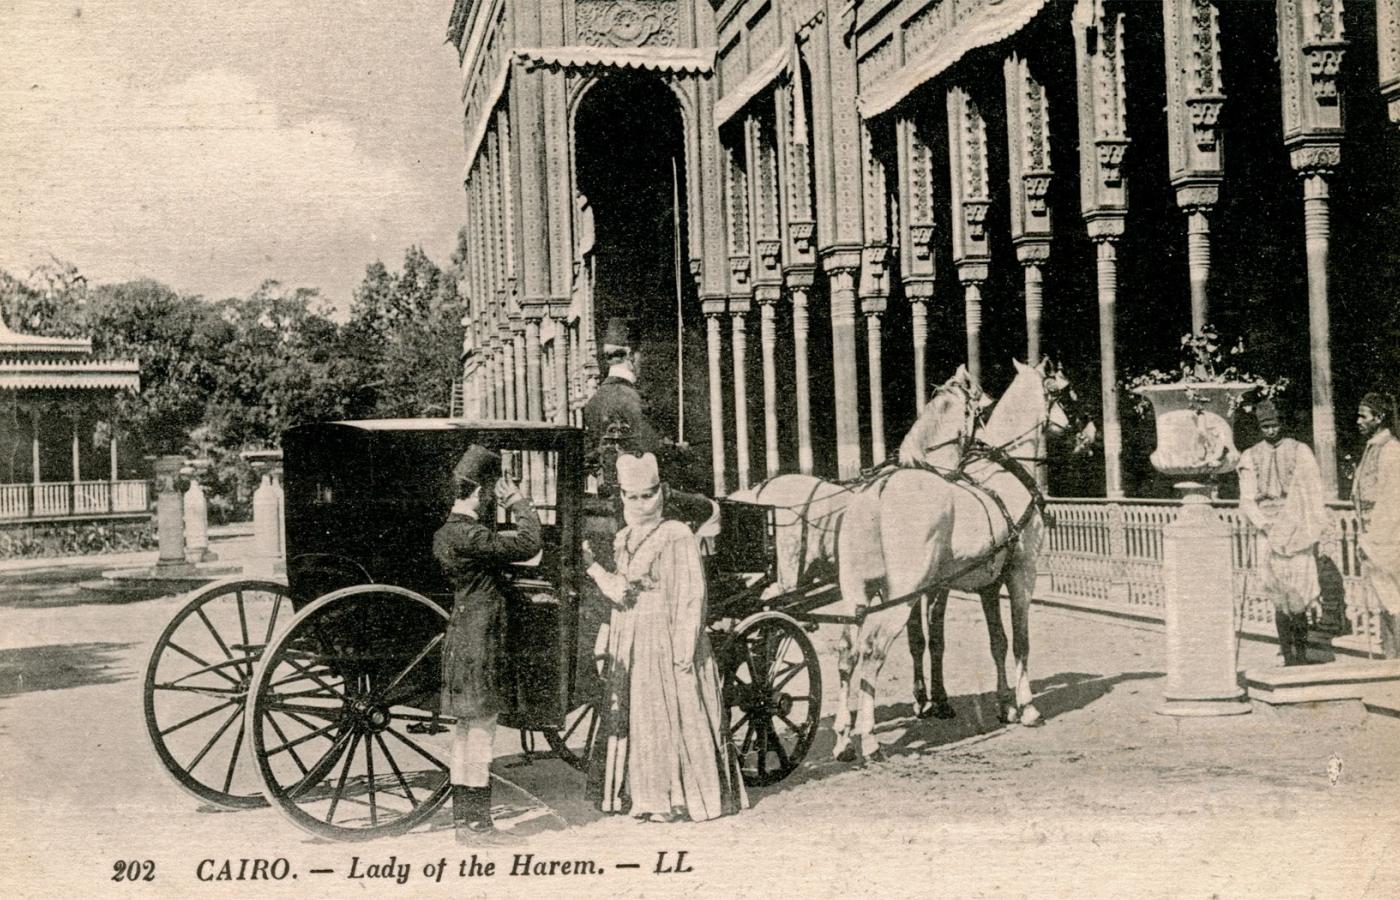 Kobiety opuszczające harem musiały być szczelnie zakryte, jak ta szykująca się do przejażdżki karetą bogata dama (koniec XIX w., Kair).